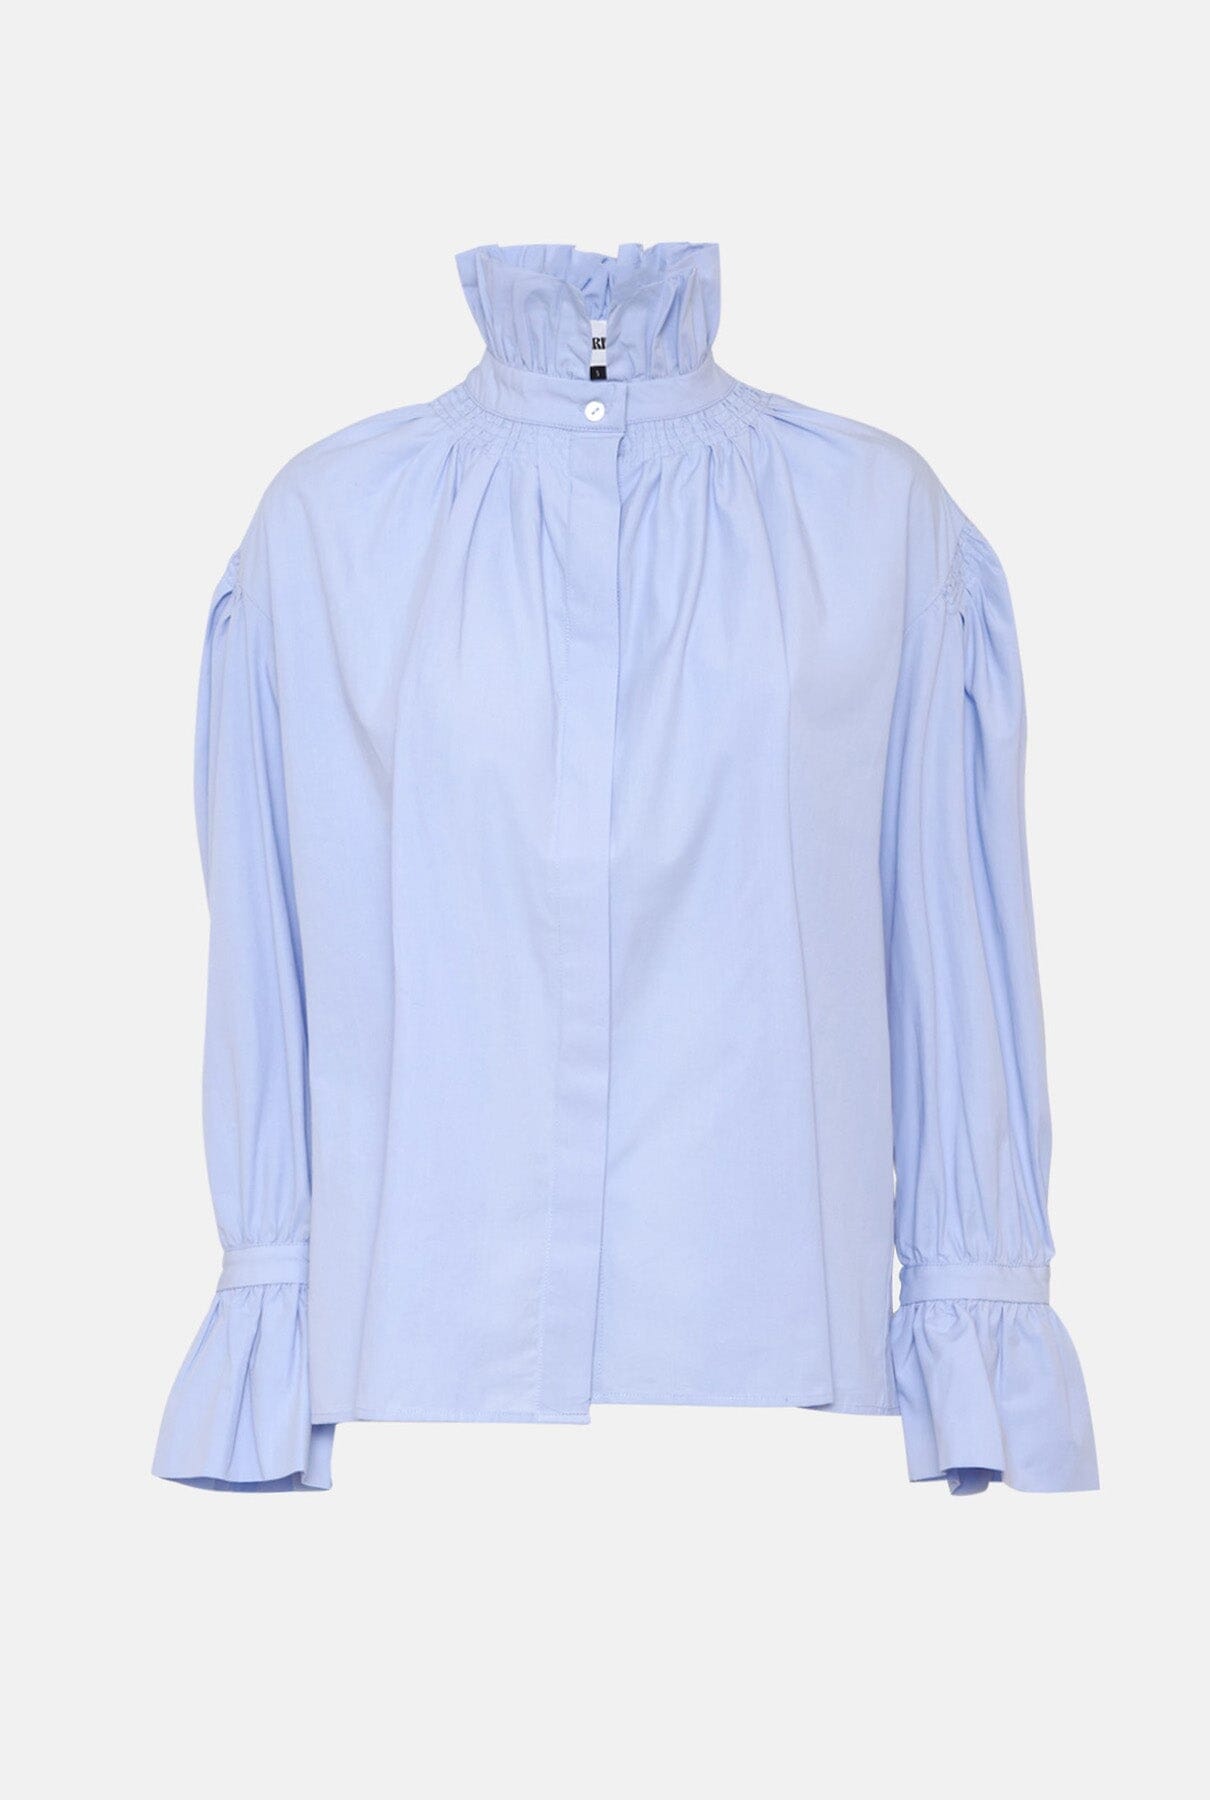 Camisa Balmoral azul Shirts & blouses Wearitbe 